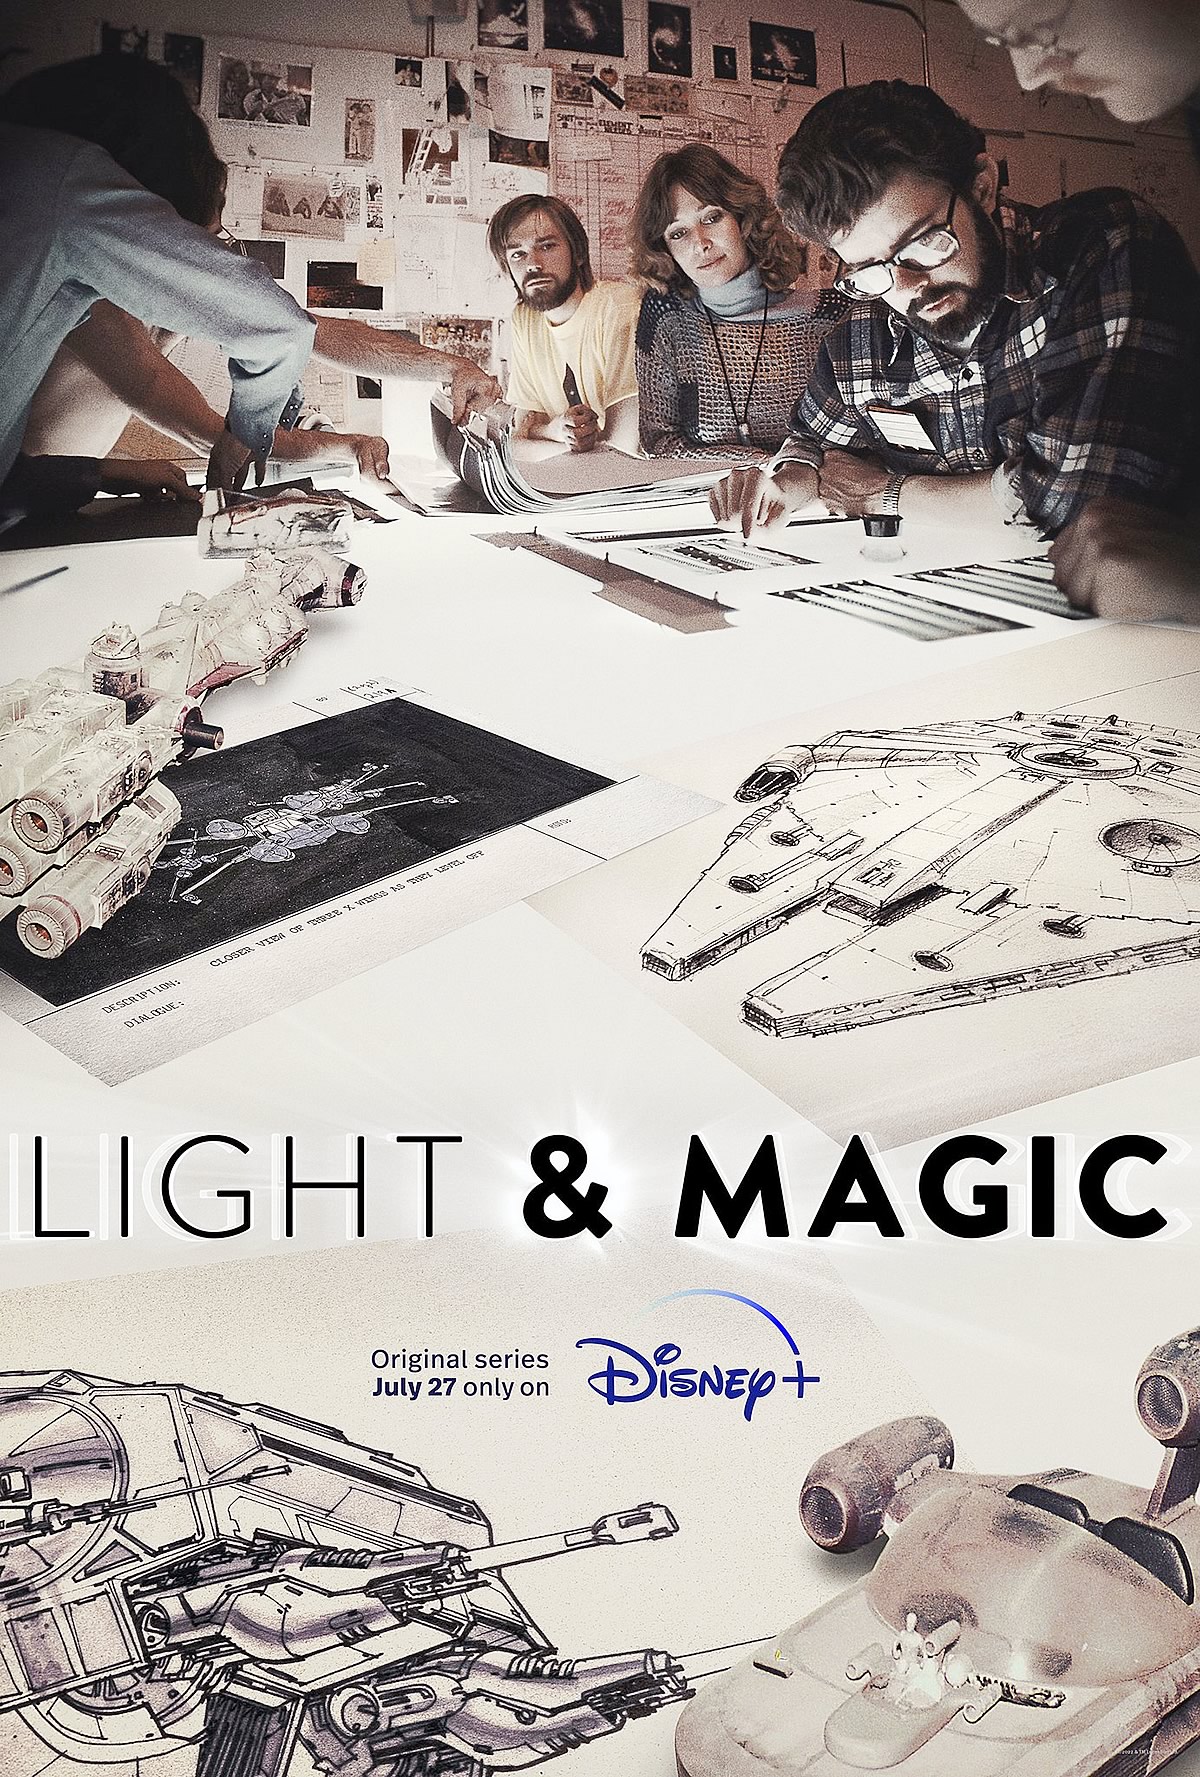 Light & Magic | Série documental em seis episódios sobre a ILM e seus filmes no Disney Plus